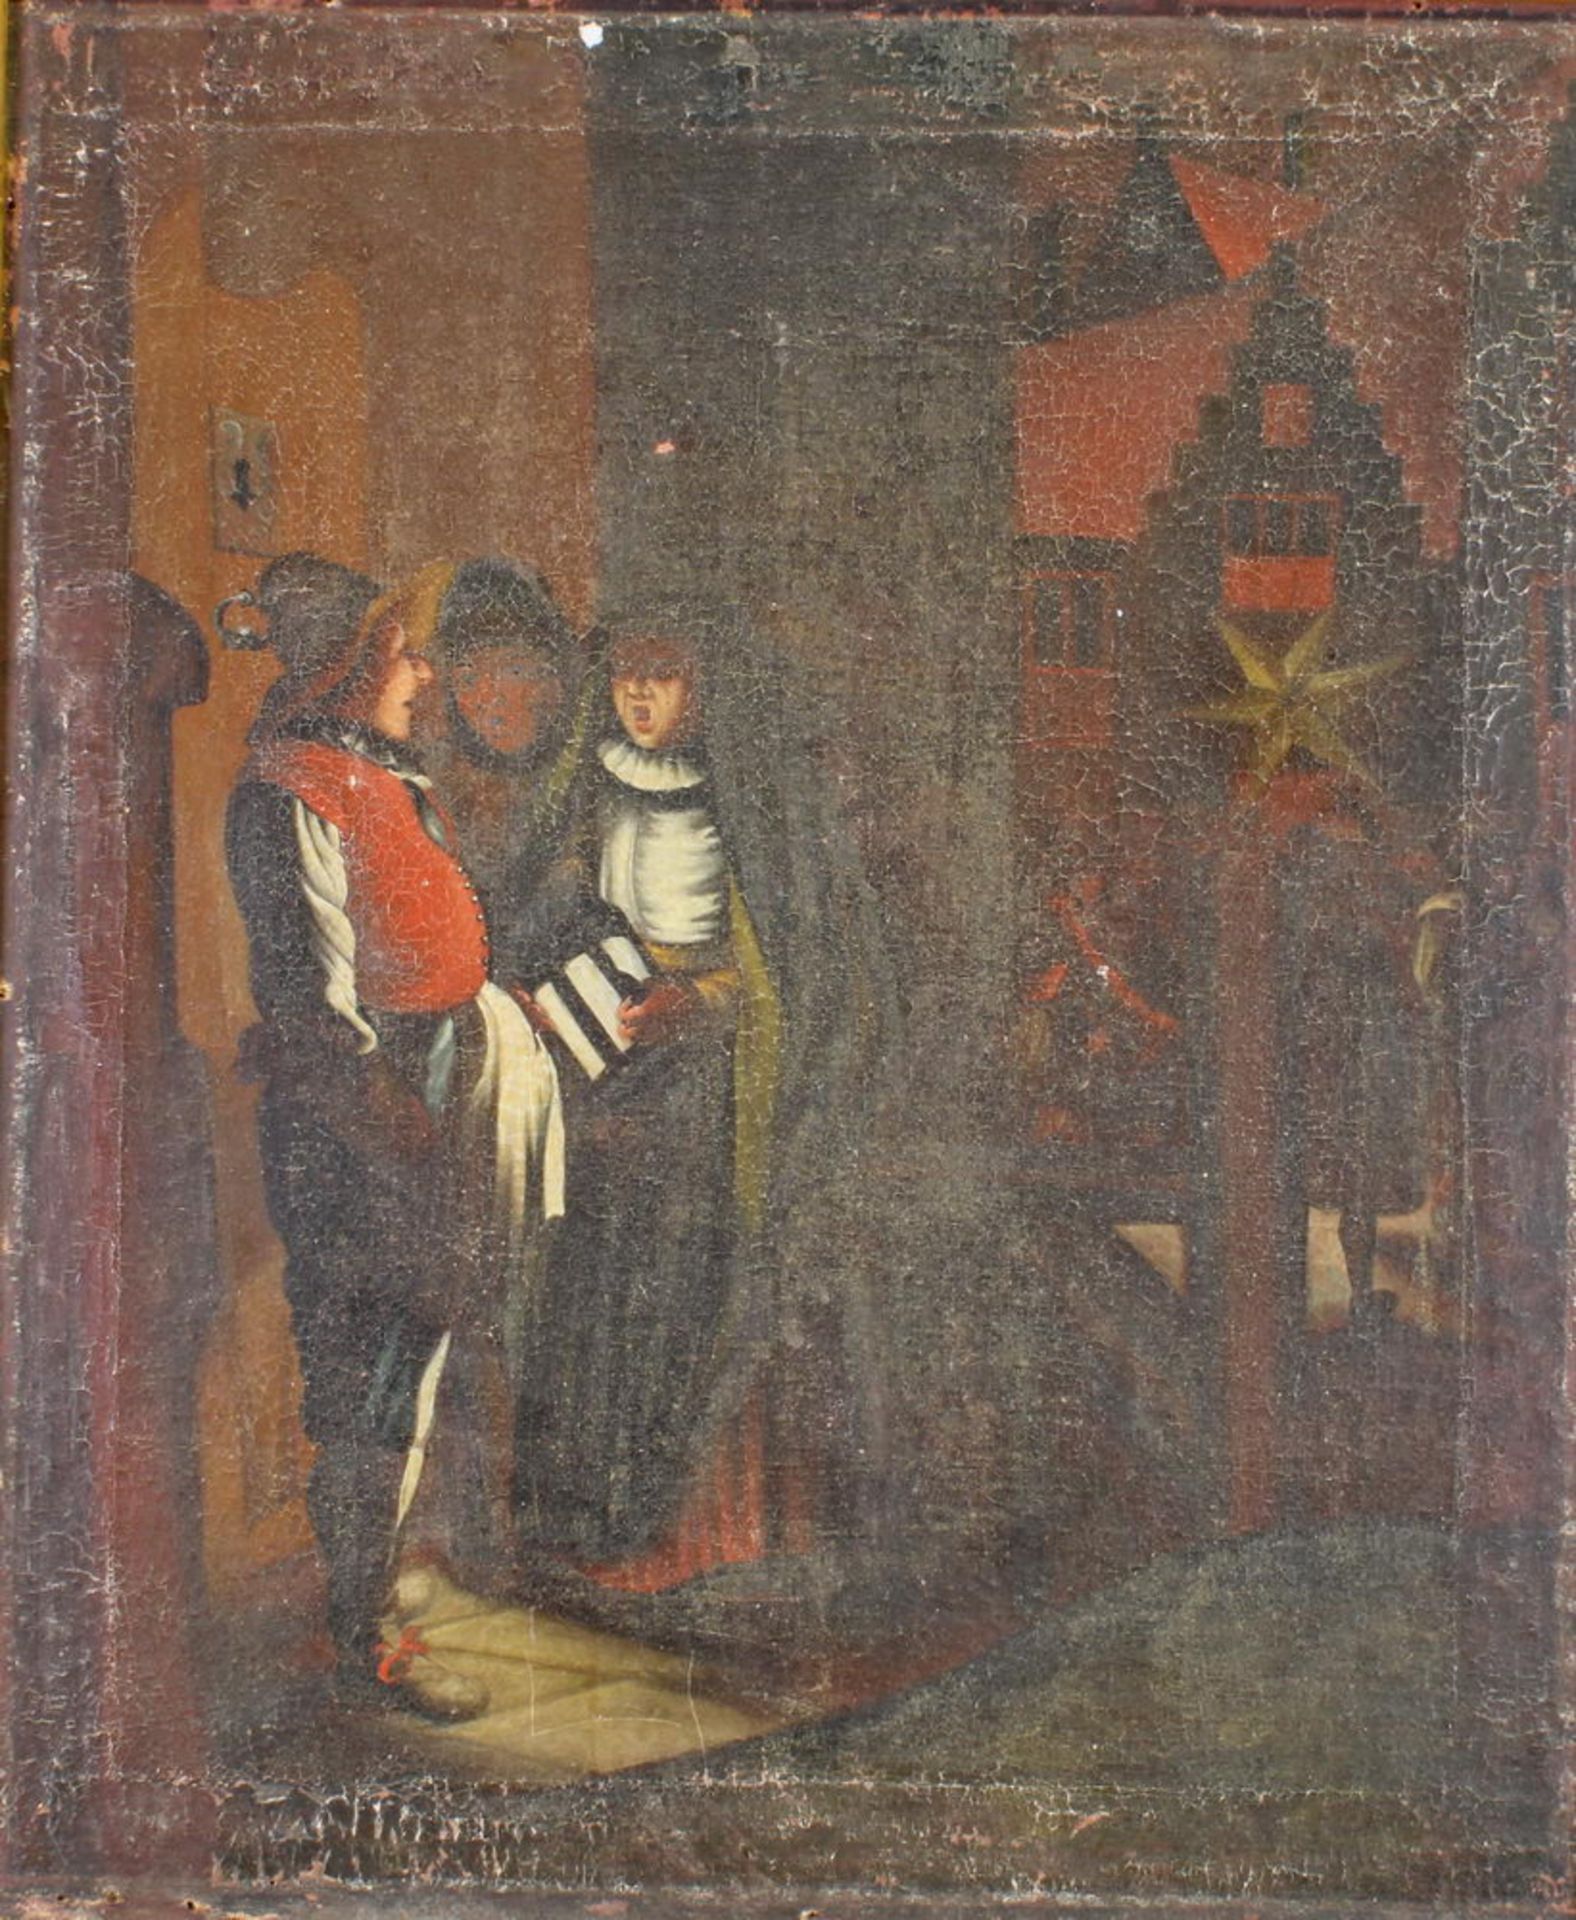 Deutscher Künstler (18./19. Jh.), "Der Nachtwächter", Öl auf Leinwand, 81 x 68 cm, verso altes K